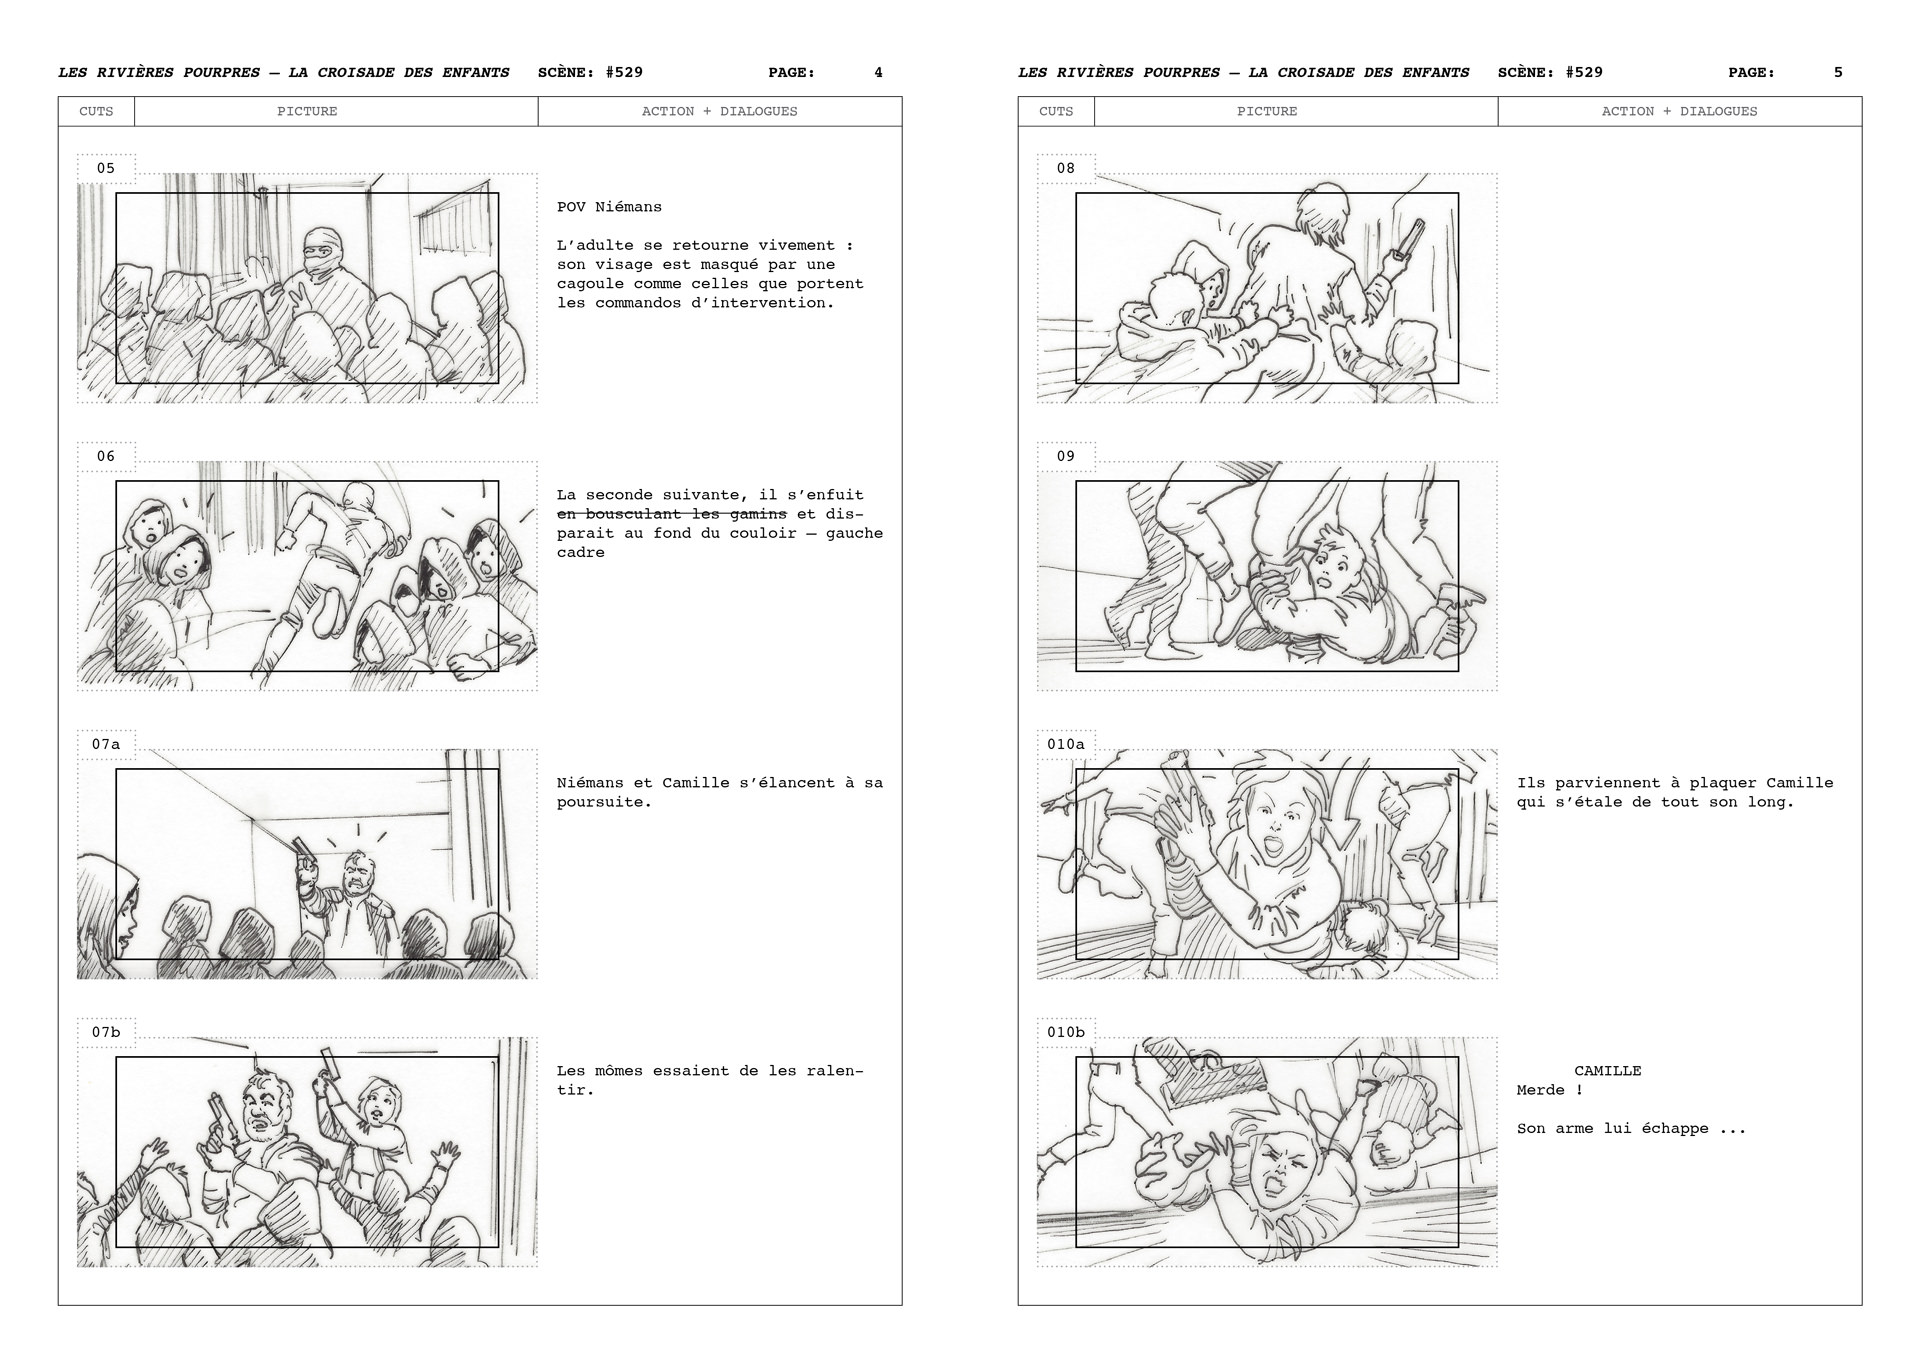 La Croisade des Enfants scene 529, storyboard, page 2